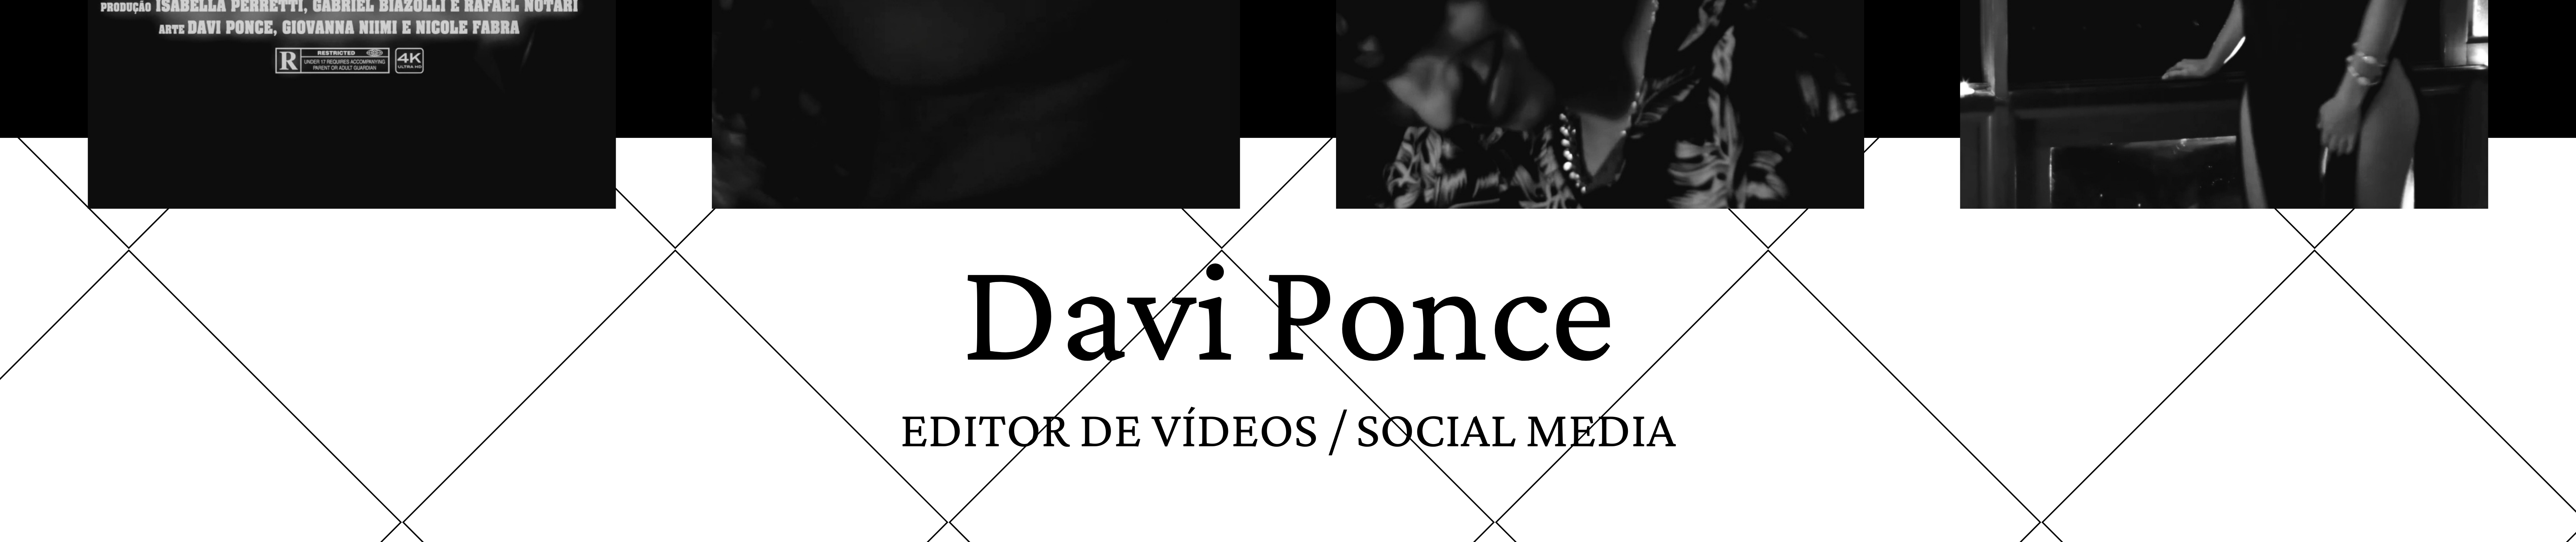 Banner del profilo di Davi Ponce